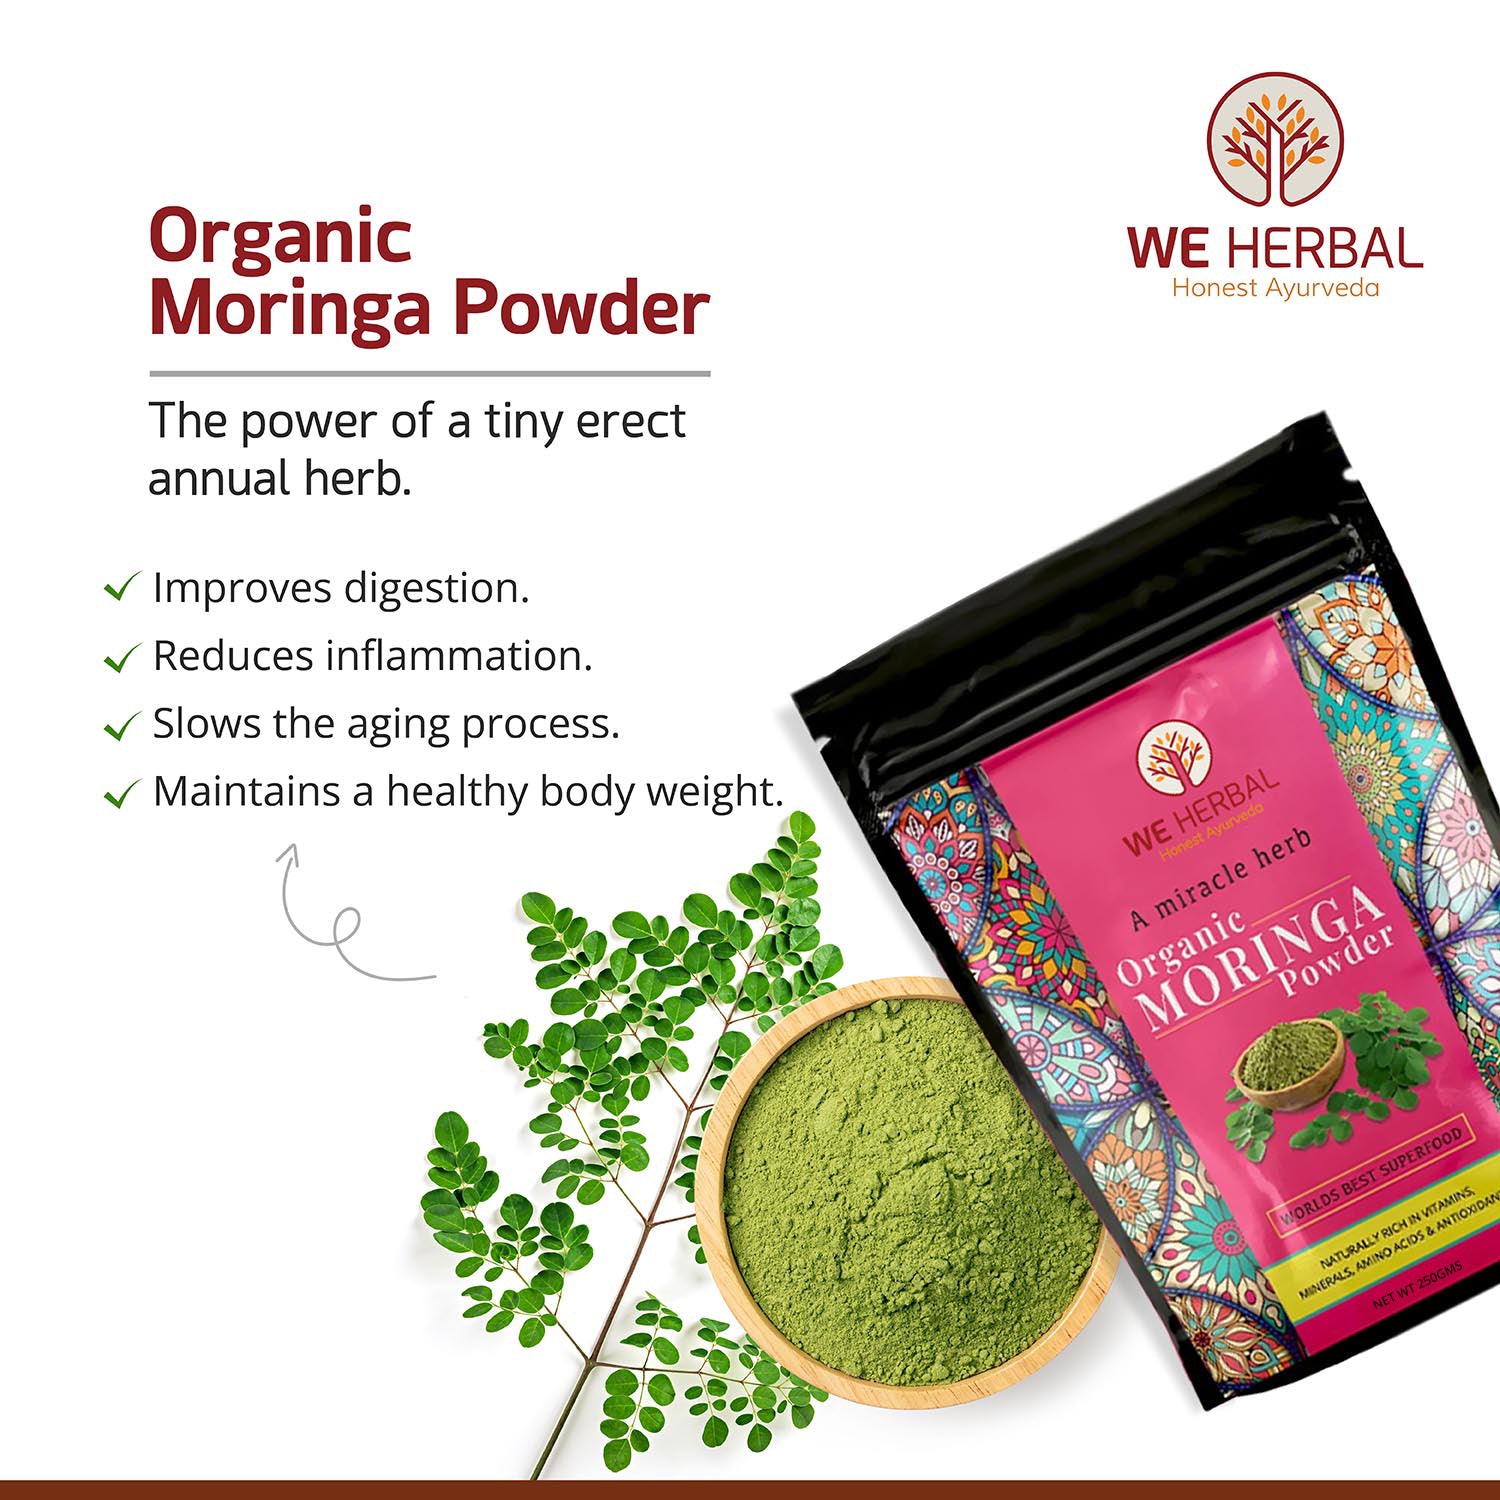 Organic Bhumi Amla Powder & Organic Moringa Powder Combo We Herbal | Back to the Nature